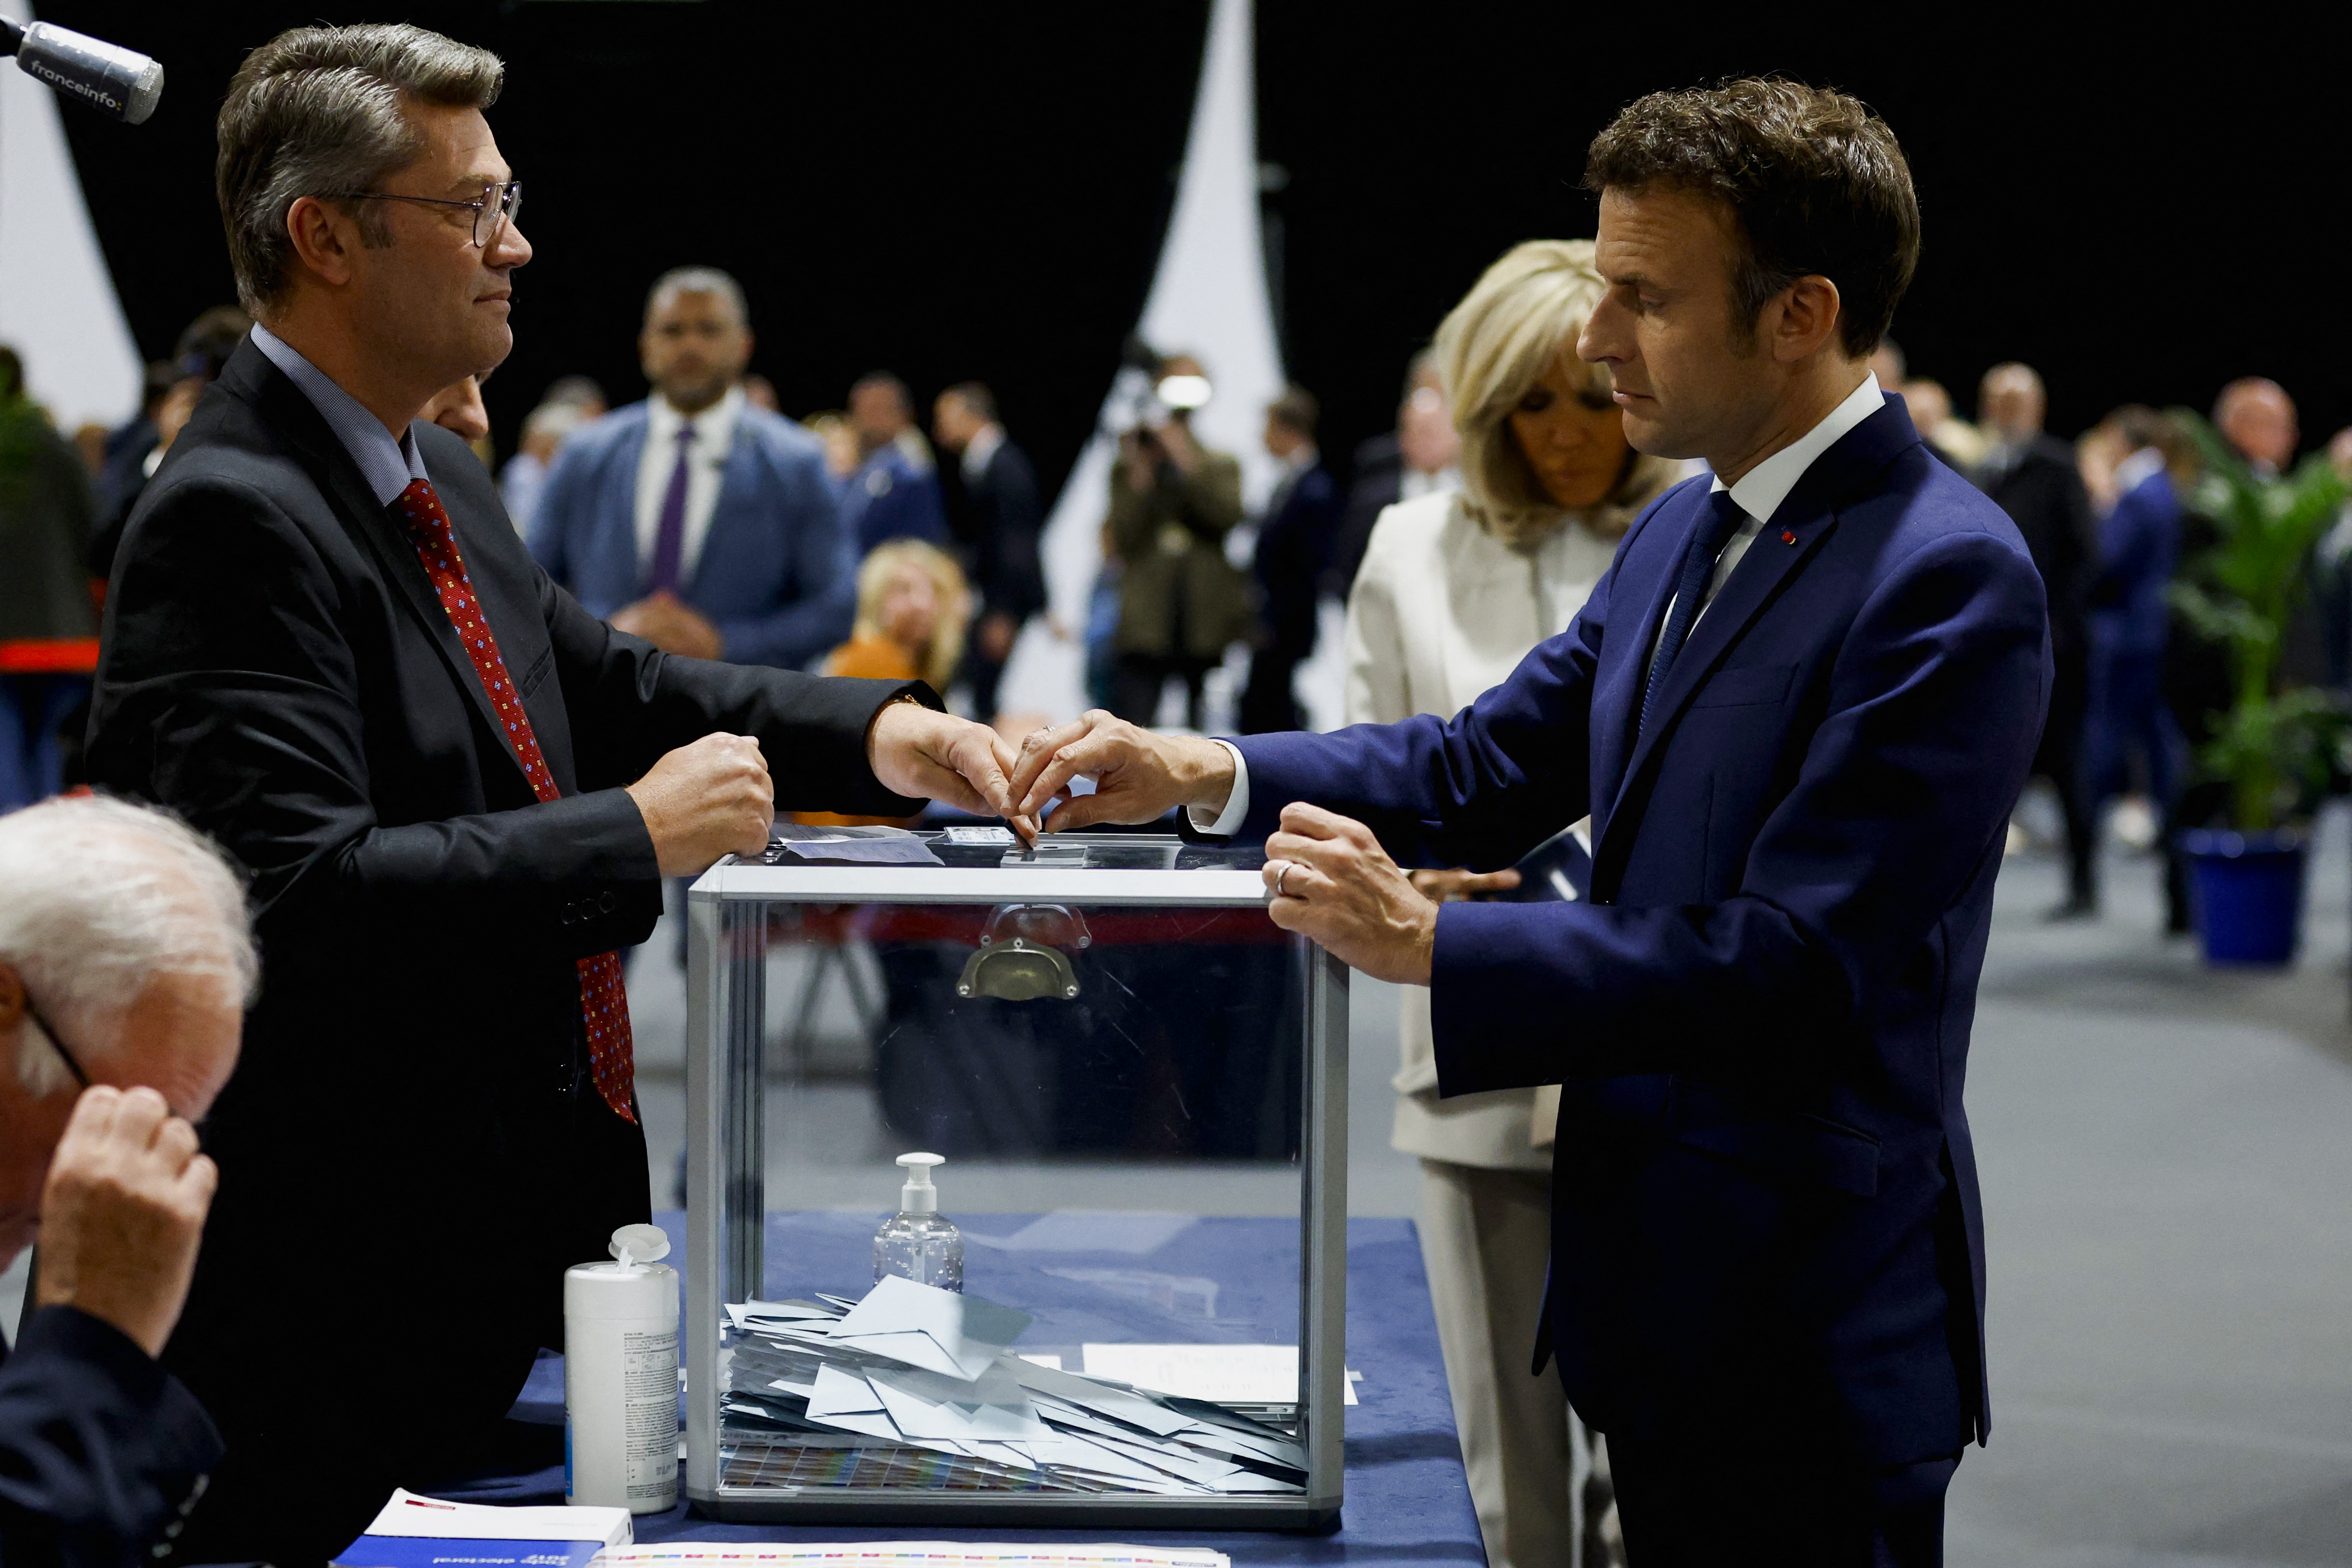 El presidente francés Emmanuel Macron, candidato a su reelección, vota en la segunda vuelta de las elecciones presidenciales francesas de 2022, en un colegio electoral en Le Touquet-Paris-Plage, Francia, el 24 de abril de 2022. REUTERS